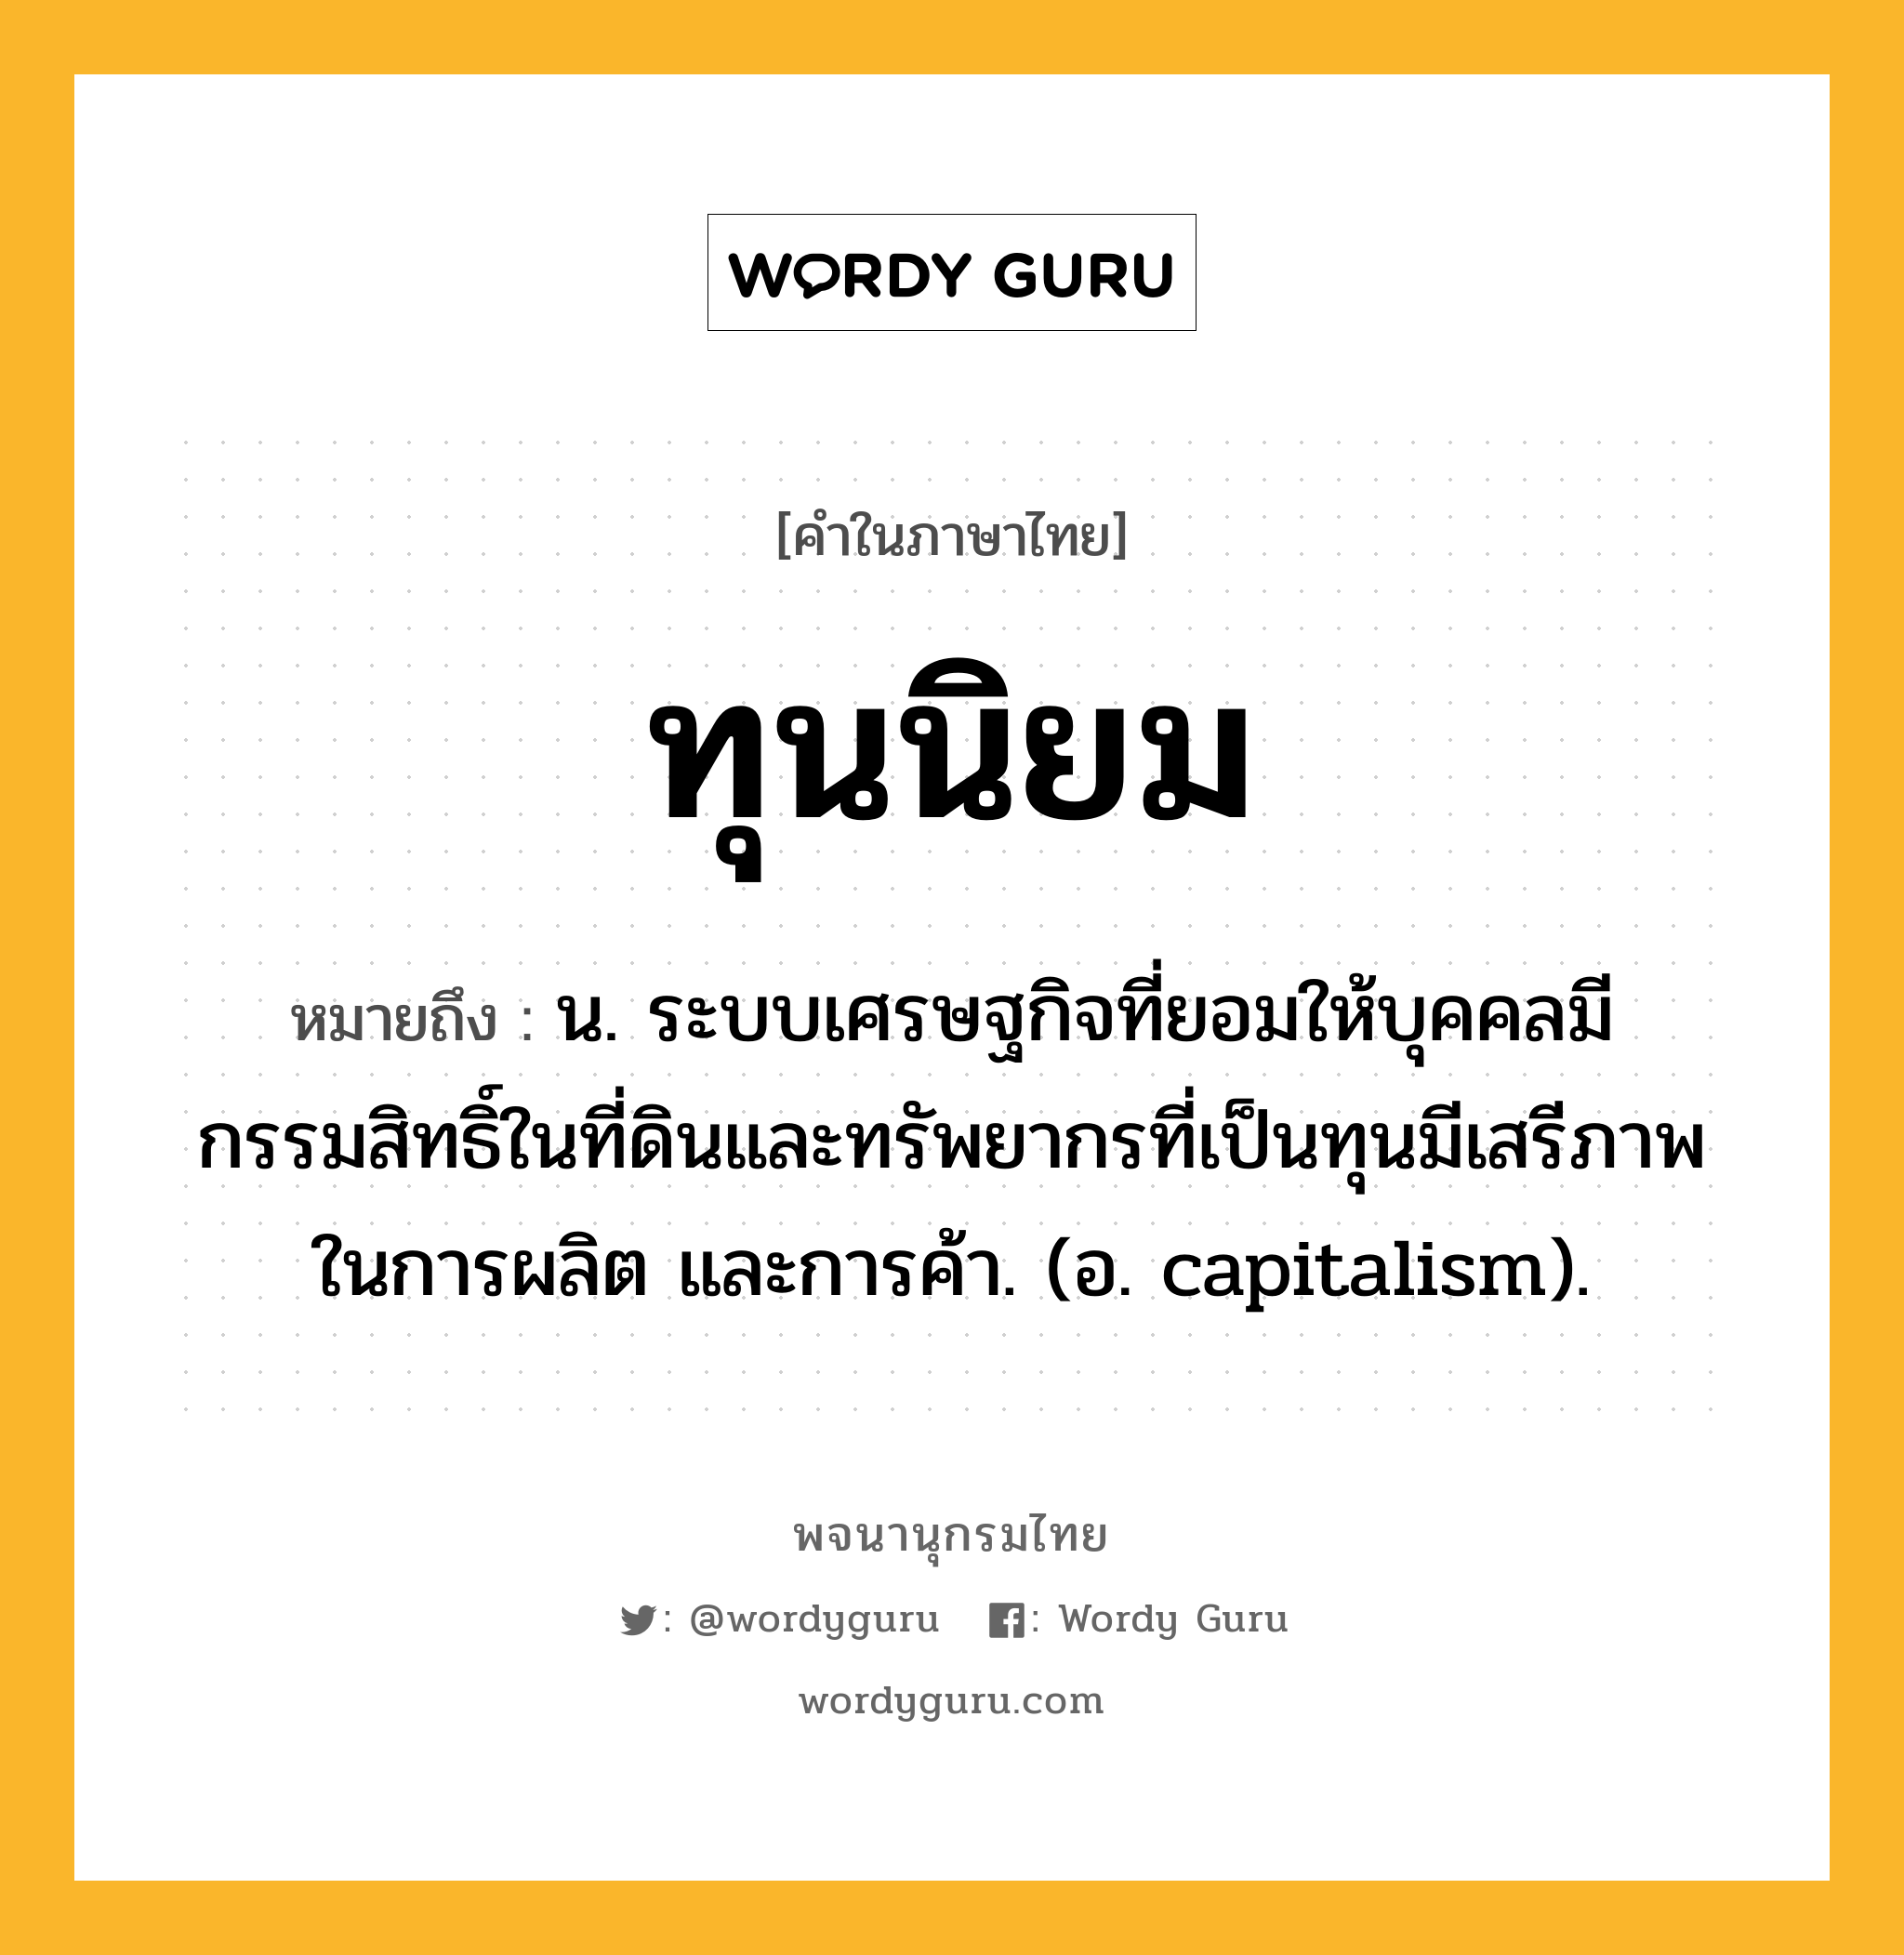 ทุนนิยม ความหมาย หมายถึงอะไร?, คำในภาษาไทย ทุนนิยม หมายถึง น. ระบบเศรษฐกิจที่ยอมให้บุคคลมีกรรมสิทธิ์ในที่ดินและทรัพยากรที่เป็นทุนมีเสรีภาพในการผลิต และการค้า. (อ. capitalism).